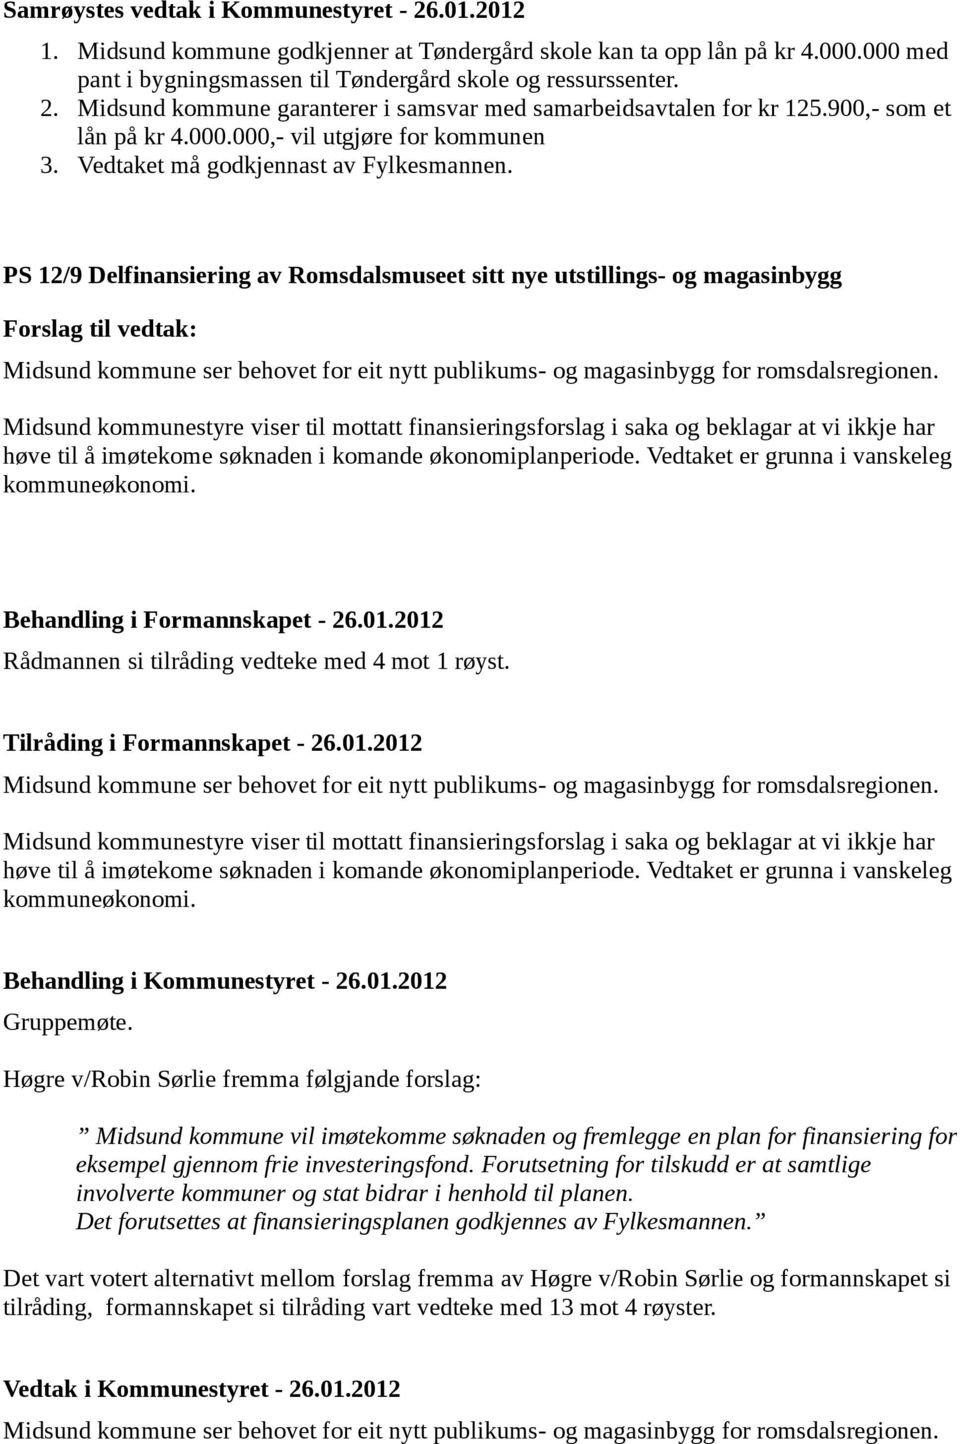 PS 12/9 Delfinansiering av Romsdalsmuseet sitt nye utstillings- og magasinbygg Forslag til vedtak: Midsund kommune ser behovet for eit nytt publikums- og magasinbygg for romsdalsregionen.